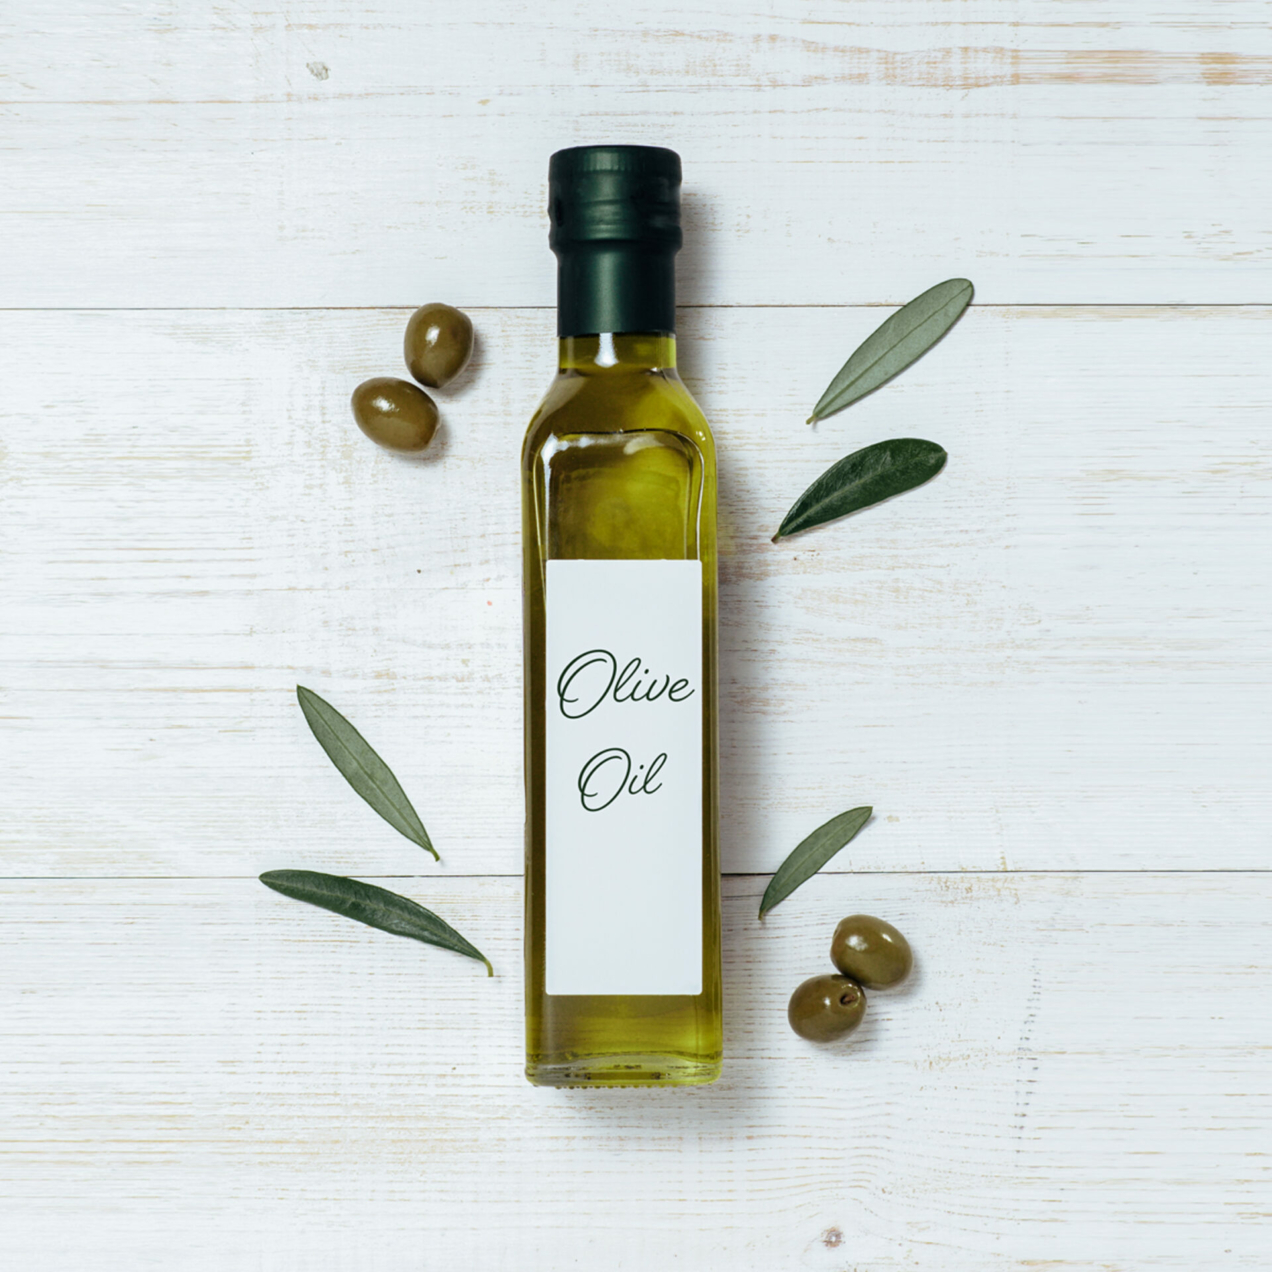 Olivenöl – eine uralte mediterrane Zutat